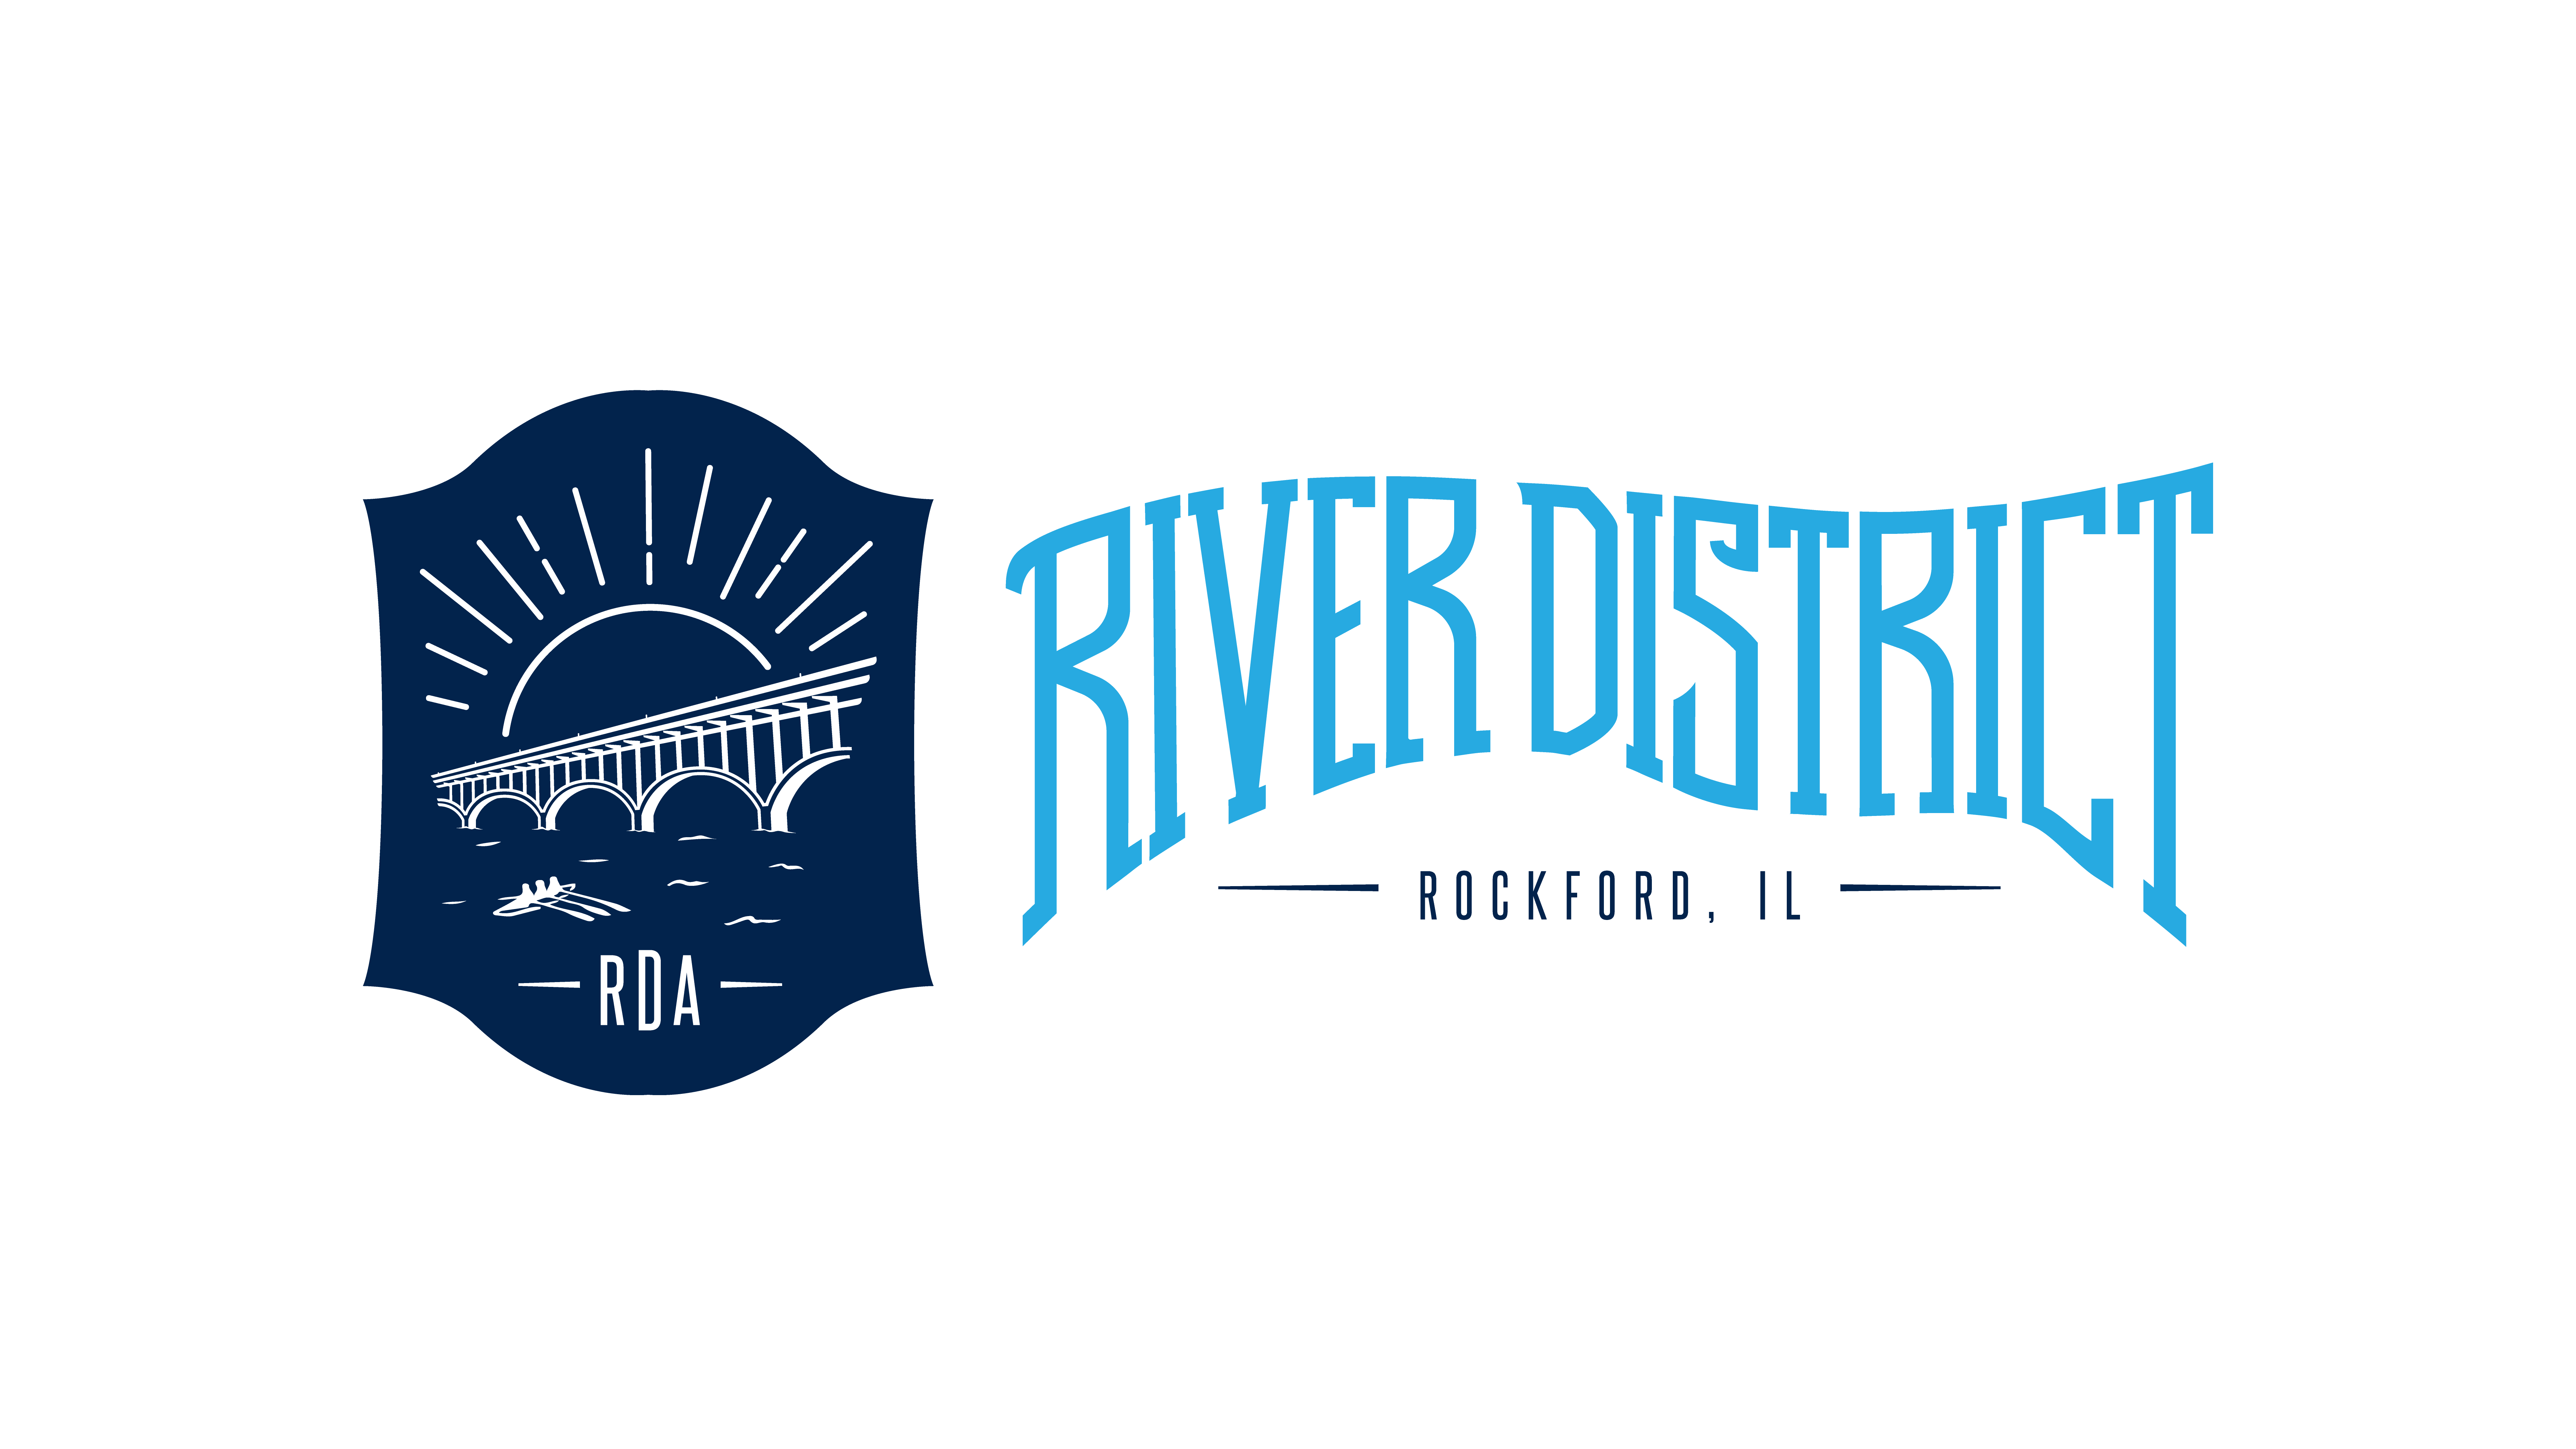 Rockford Logo - RDA - River District Association of Rockford, IL